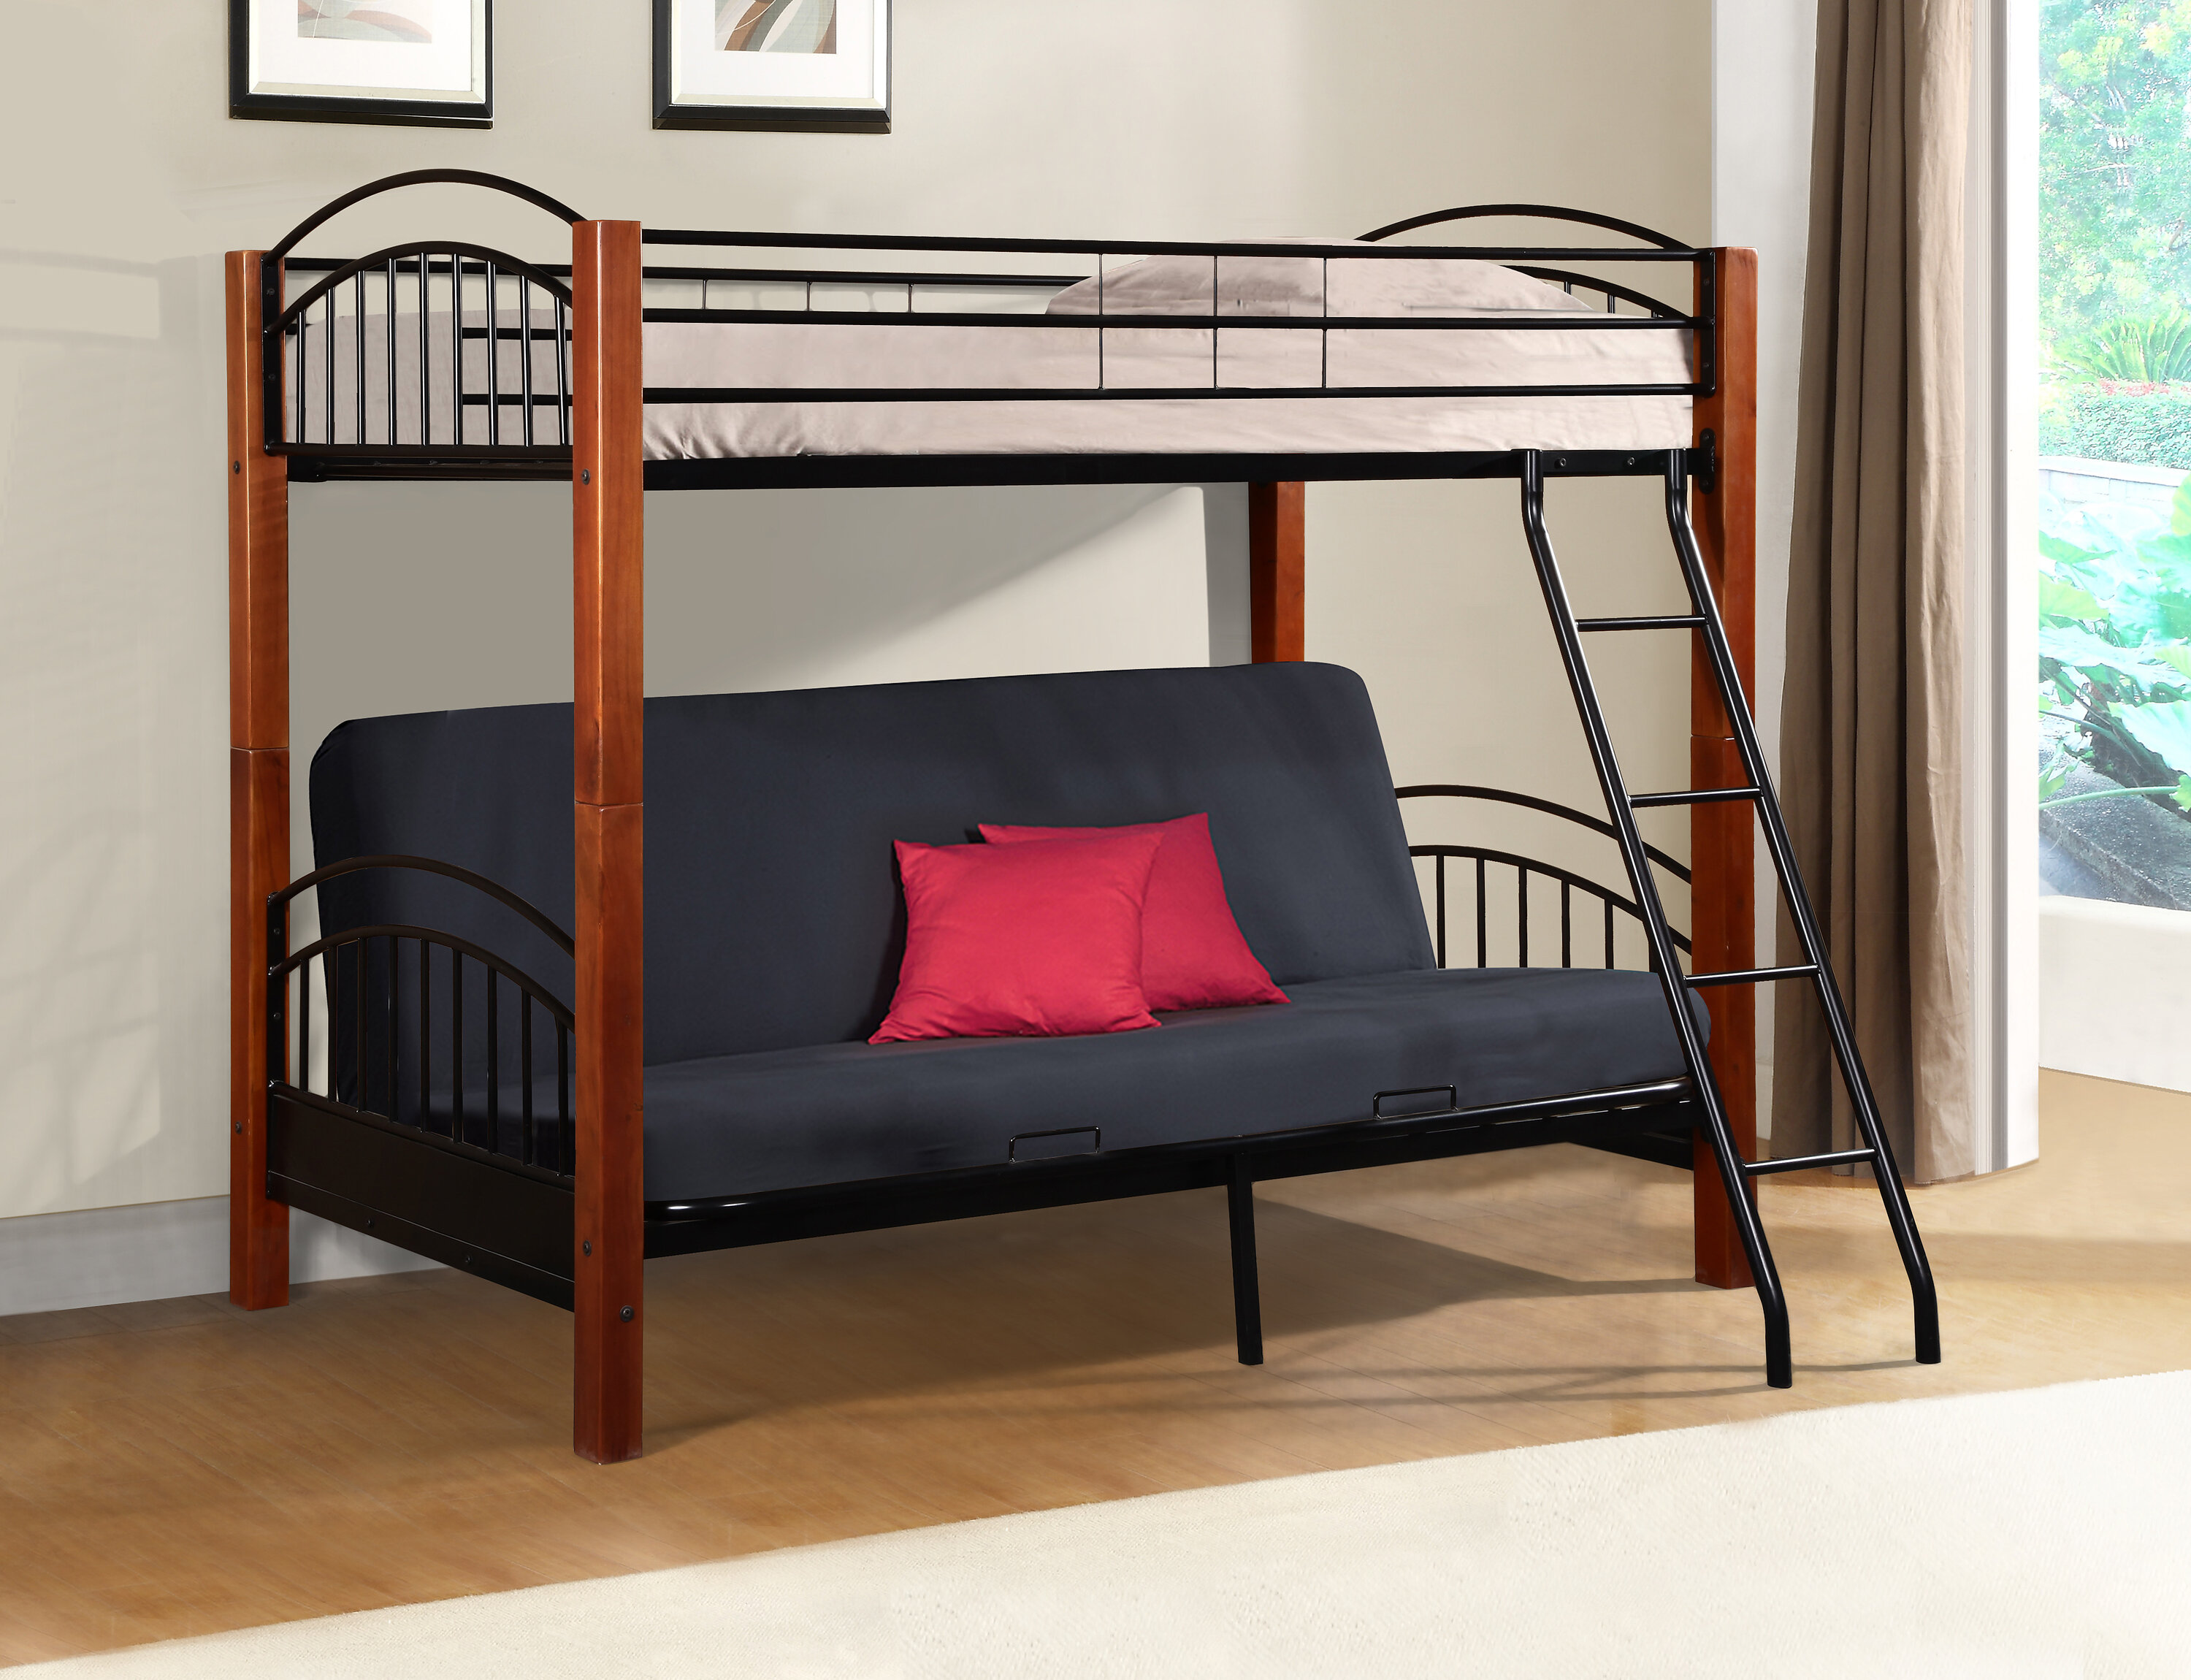 Harriet Bee Hermina Metal And Wood Twin Bunk Bed Wayfair